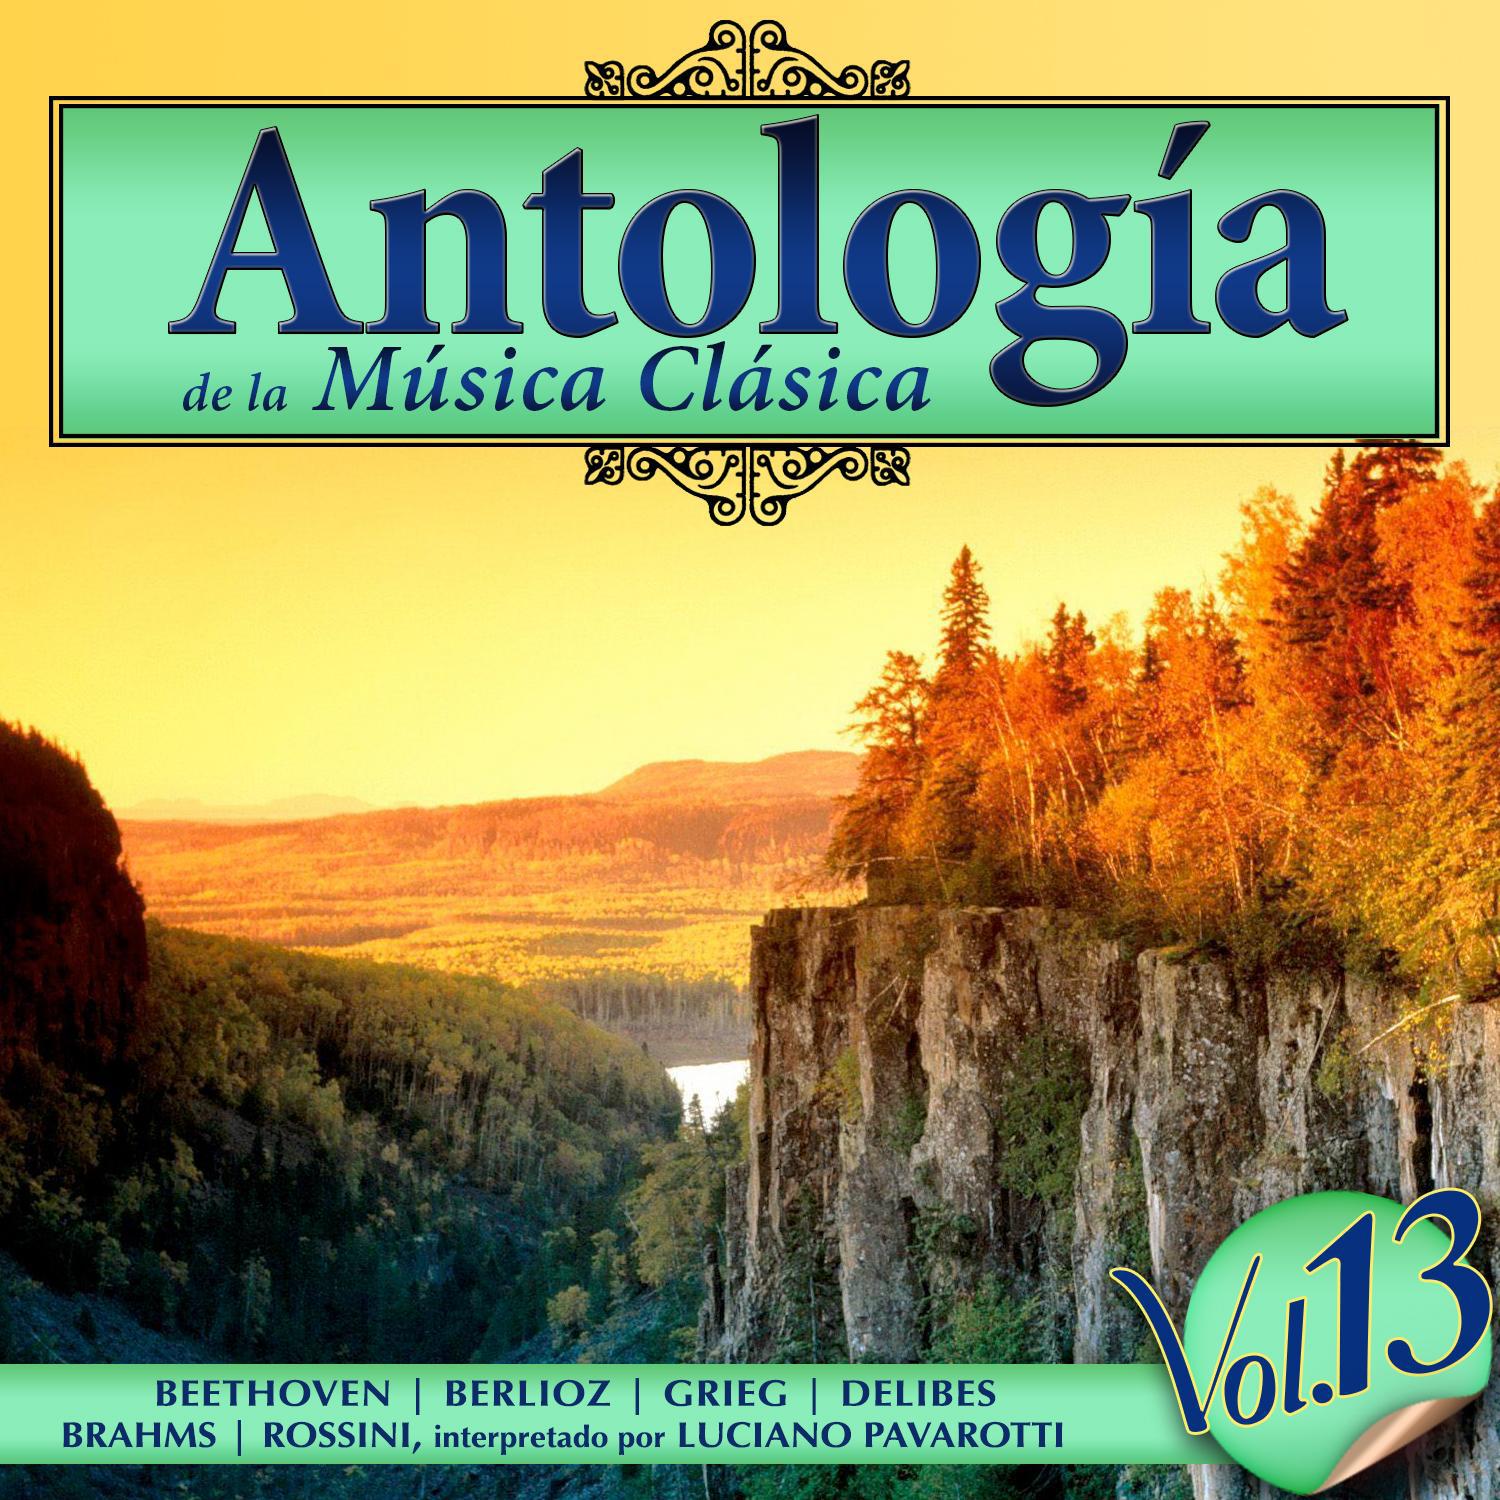 Antología de la Música Clásica. Vol. 13专辑